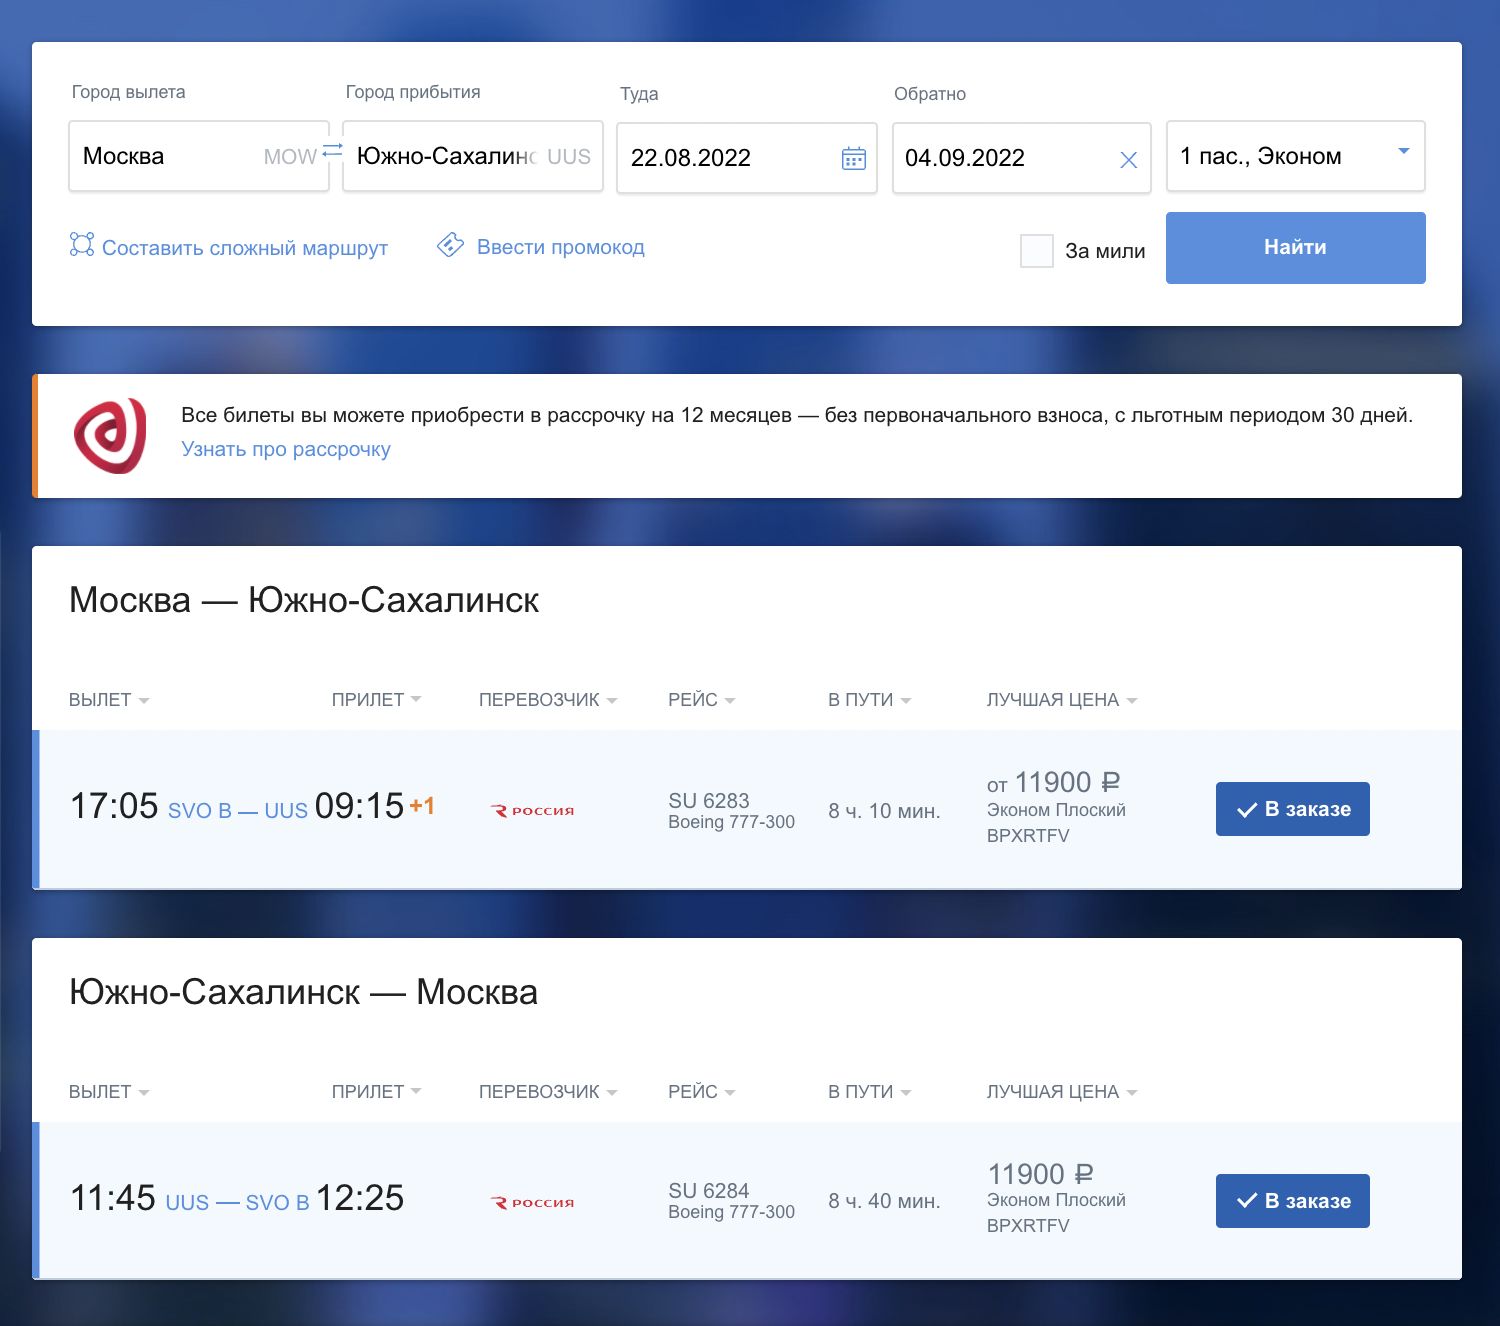 В стоимость билетов включена ручная кладь до 10 килограммов и багаж до 23 килограммов. Источник: aeroflot.ru